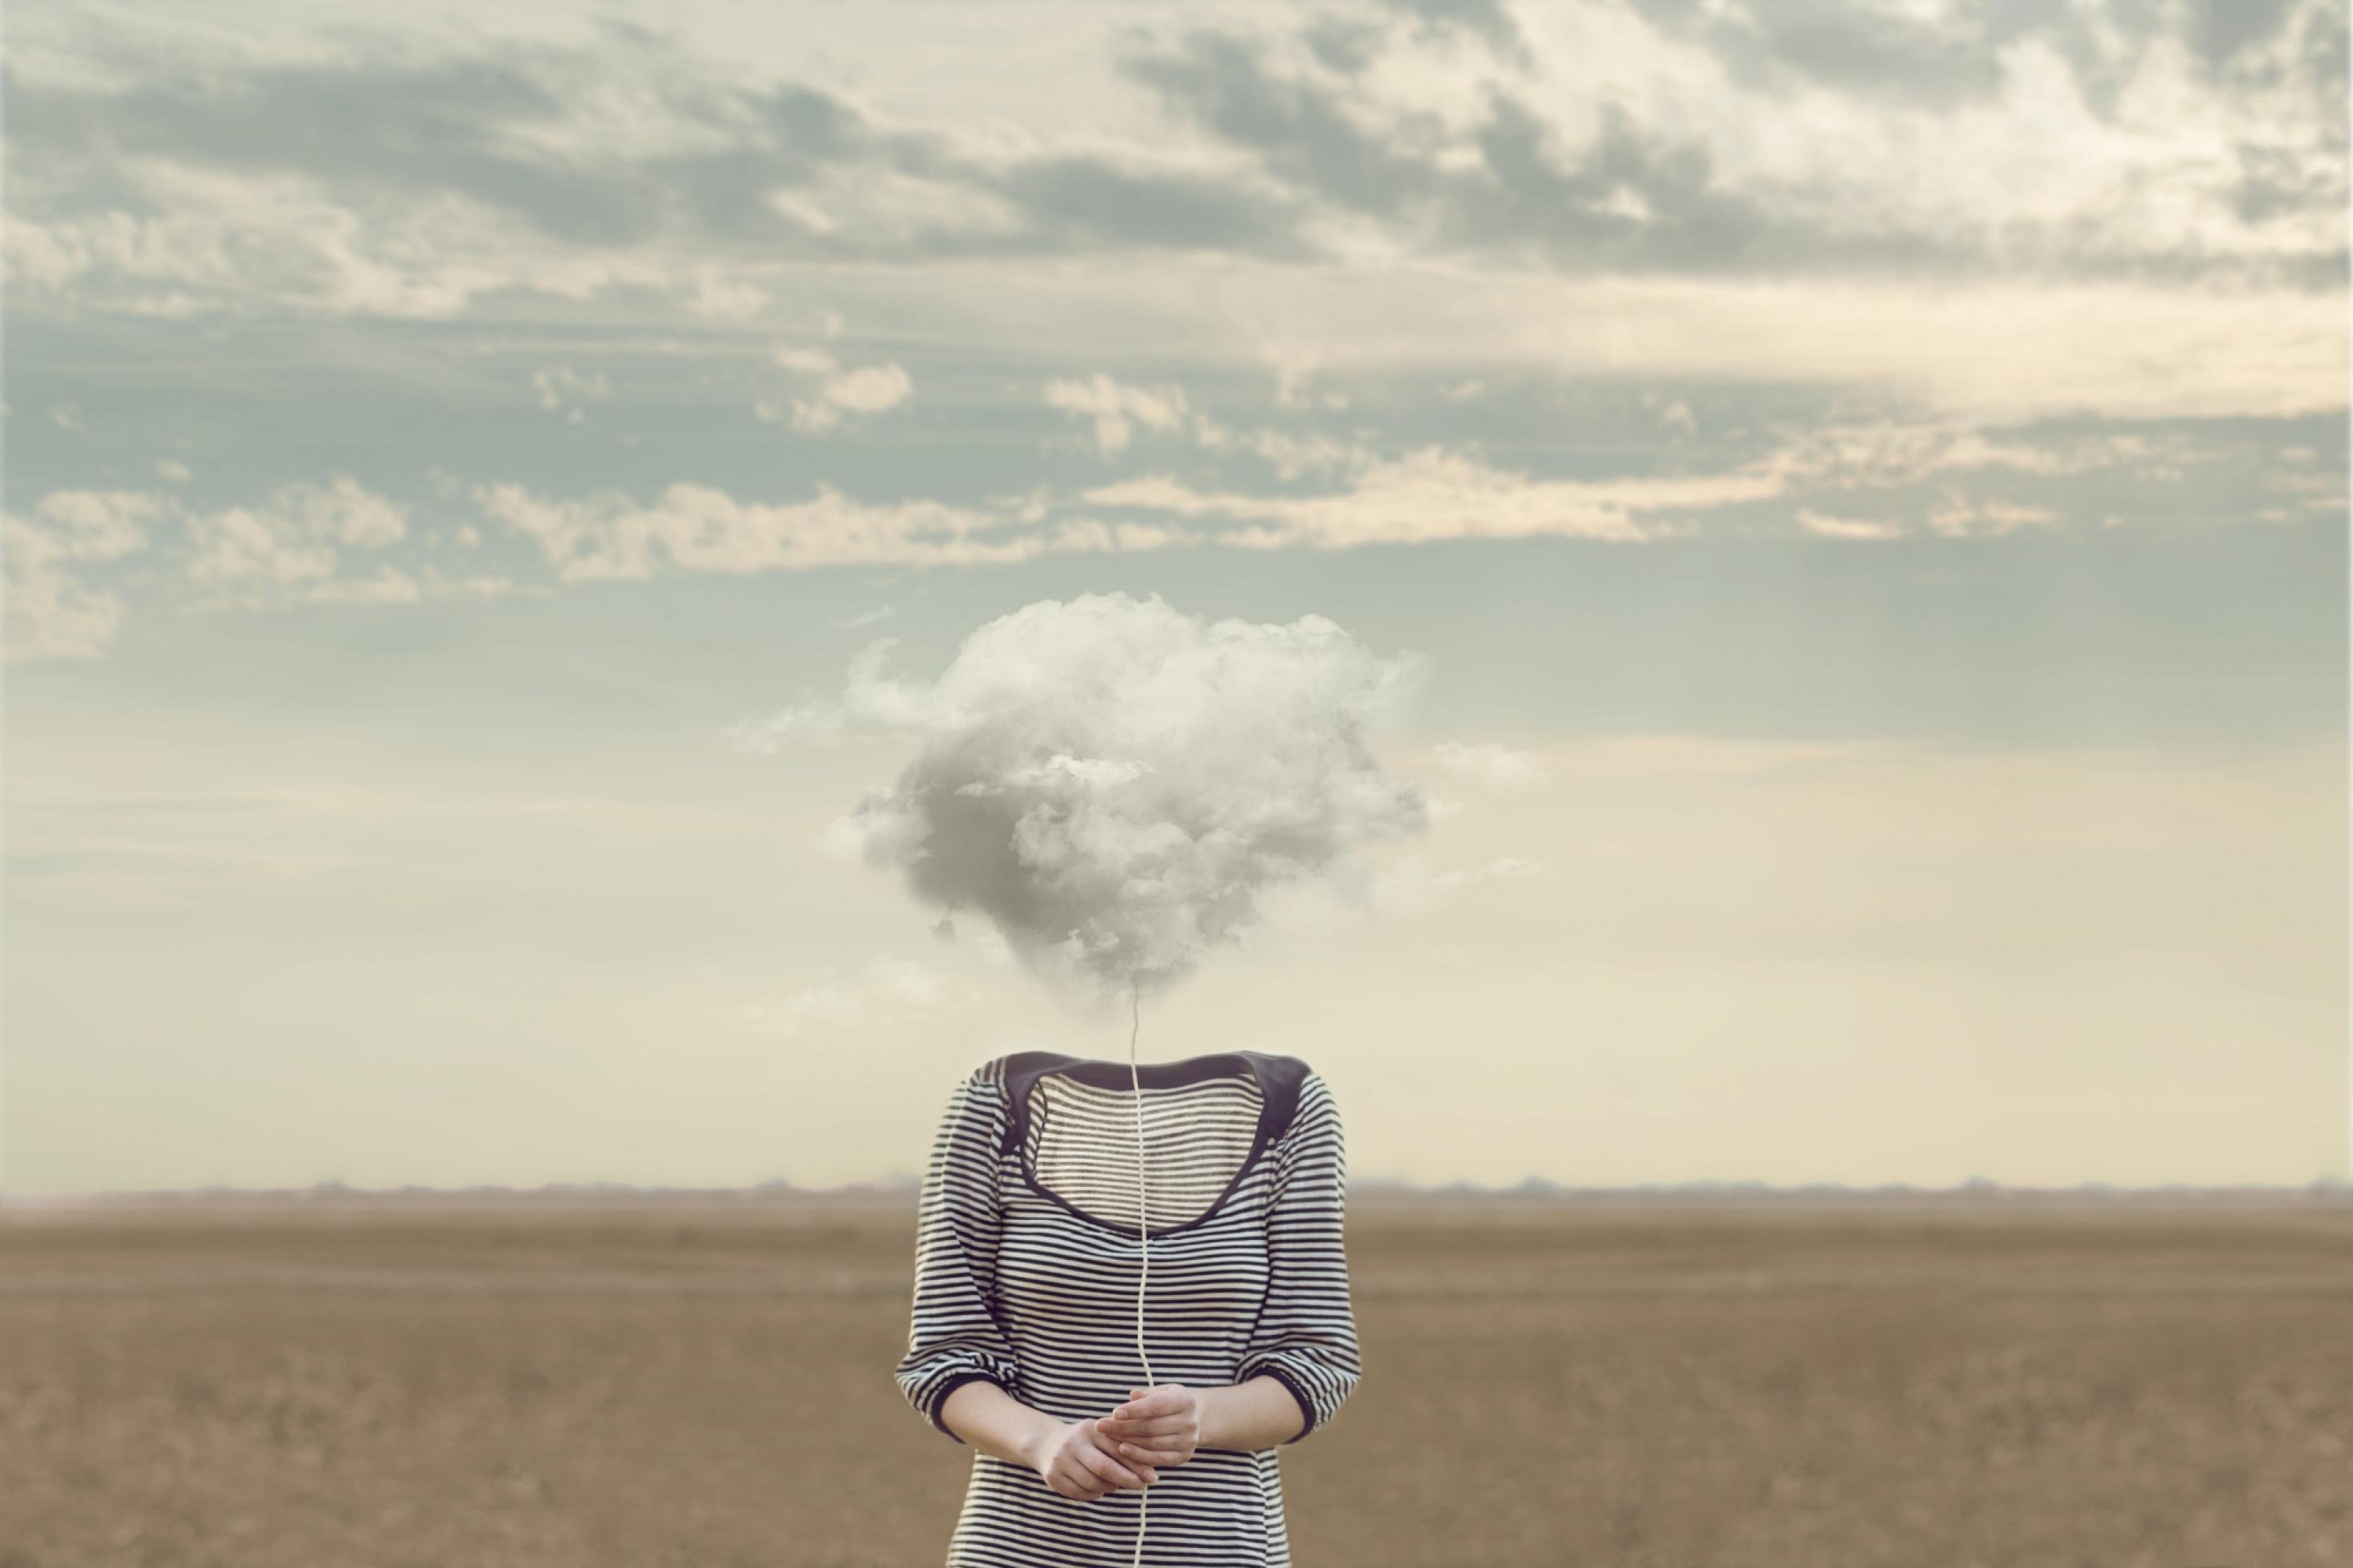 Eine Frau in einem grau-weiß gestreiften Kleid, steht ohne Kopf in einer Wüste. Anstelle ihres Kopfes ist eine Wolke abgebildet.